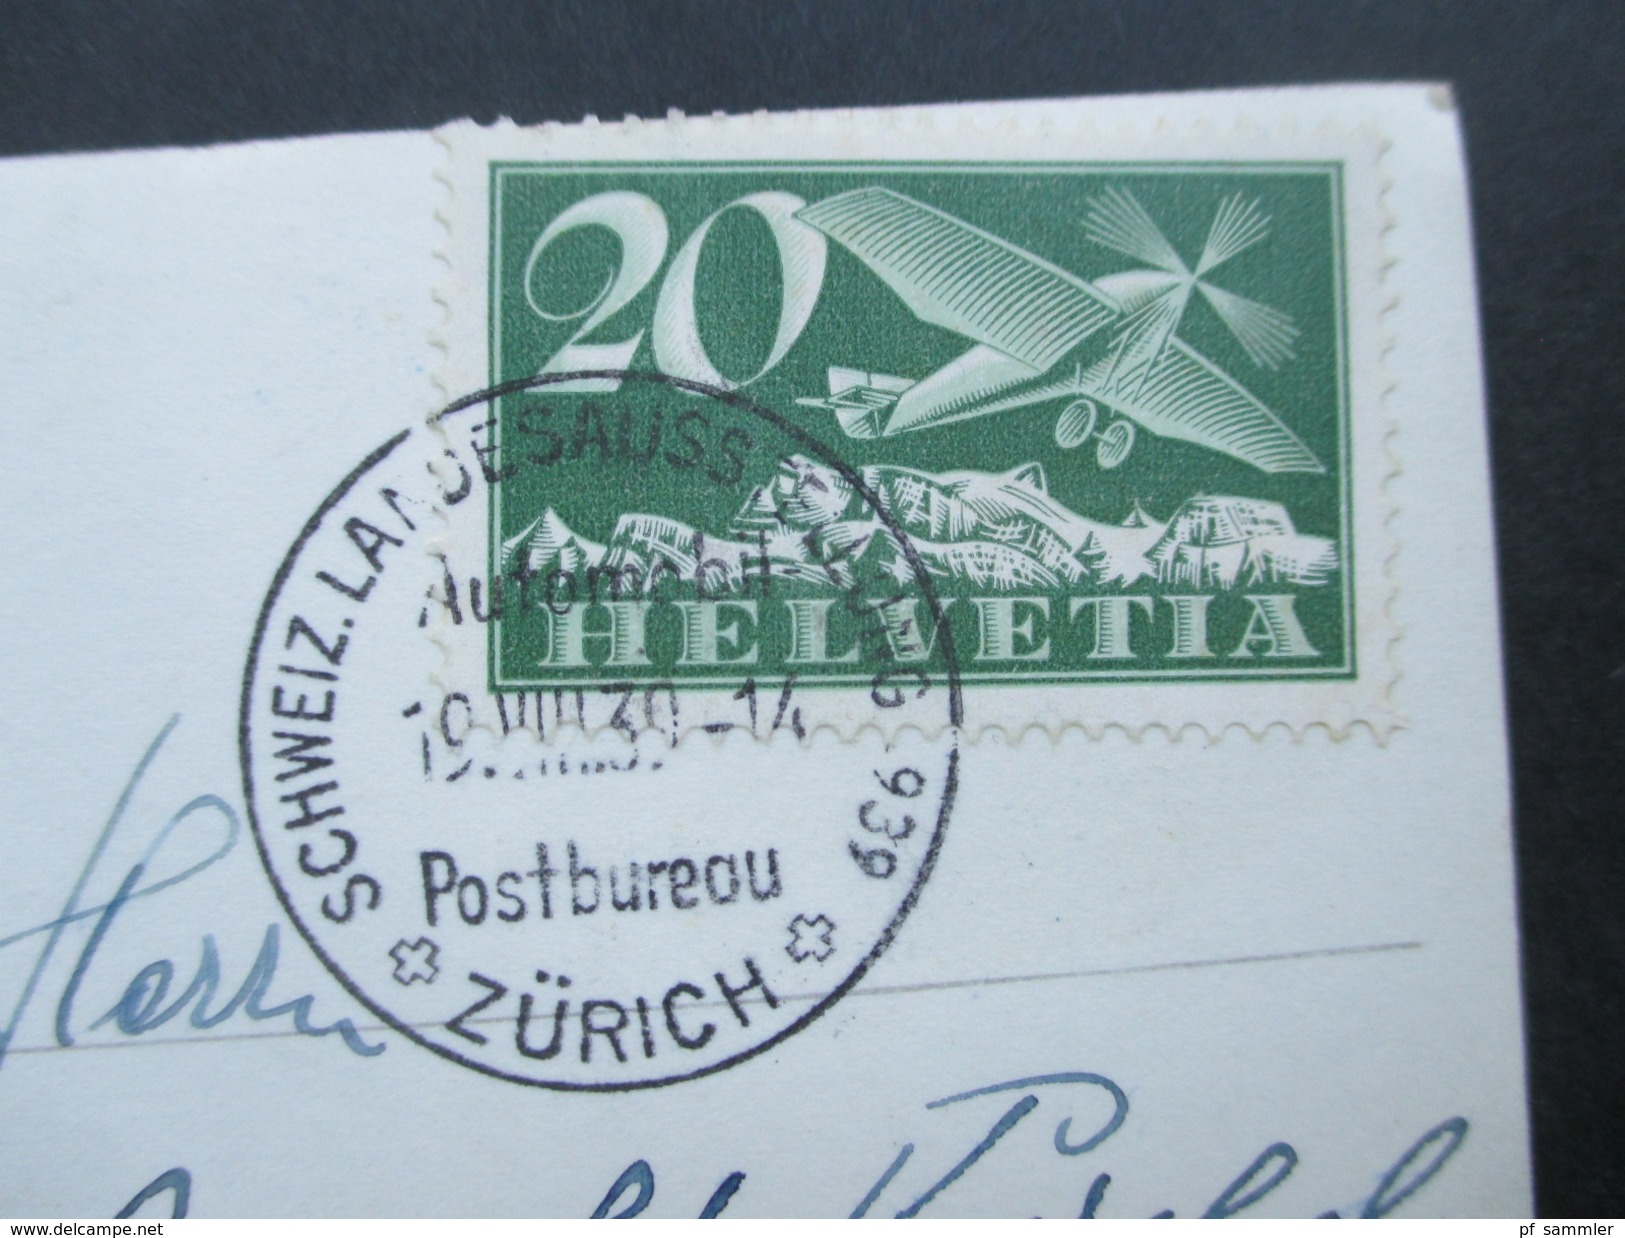 Schweiz AK Spiez 1939 Nr. 213 Flugpost Eindecker. Stempel: Schweiz Landesausstellung 1939 Postbureau Zürich - Briefe U. Dokumente